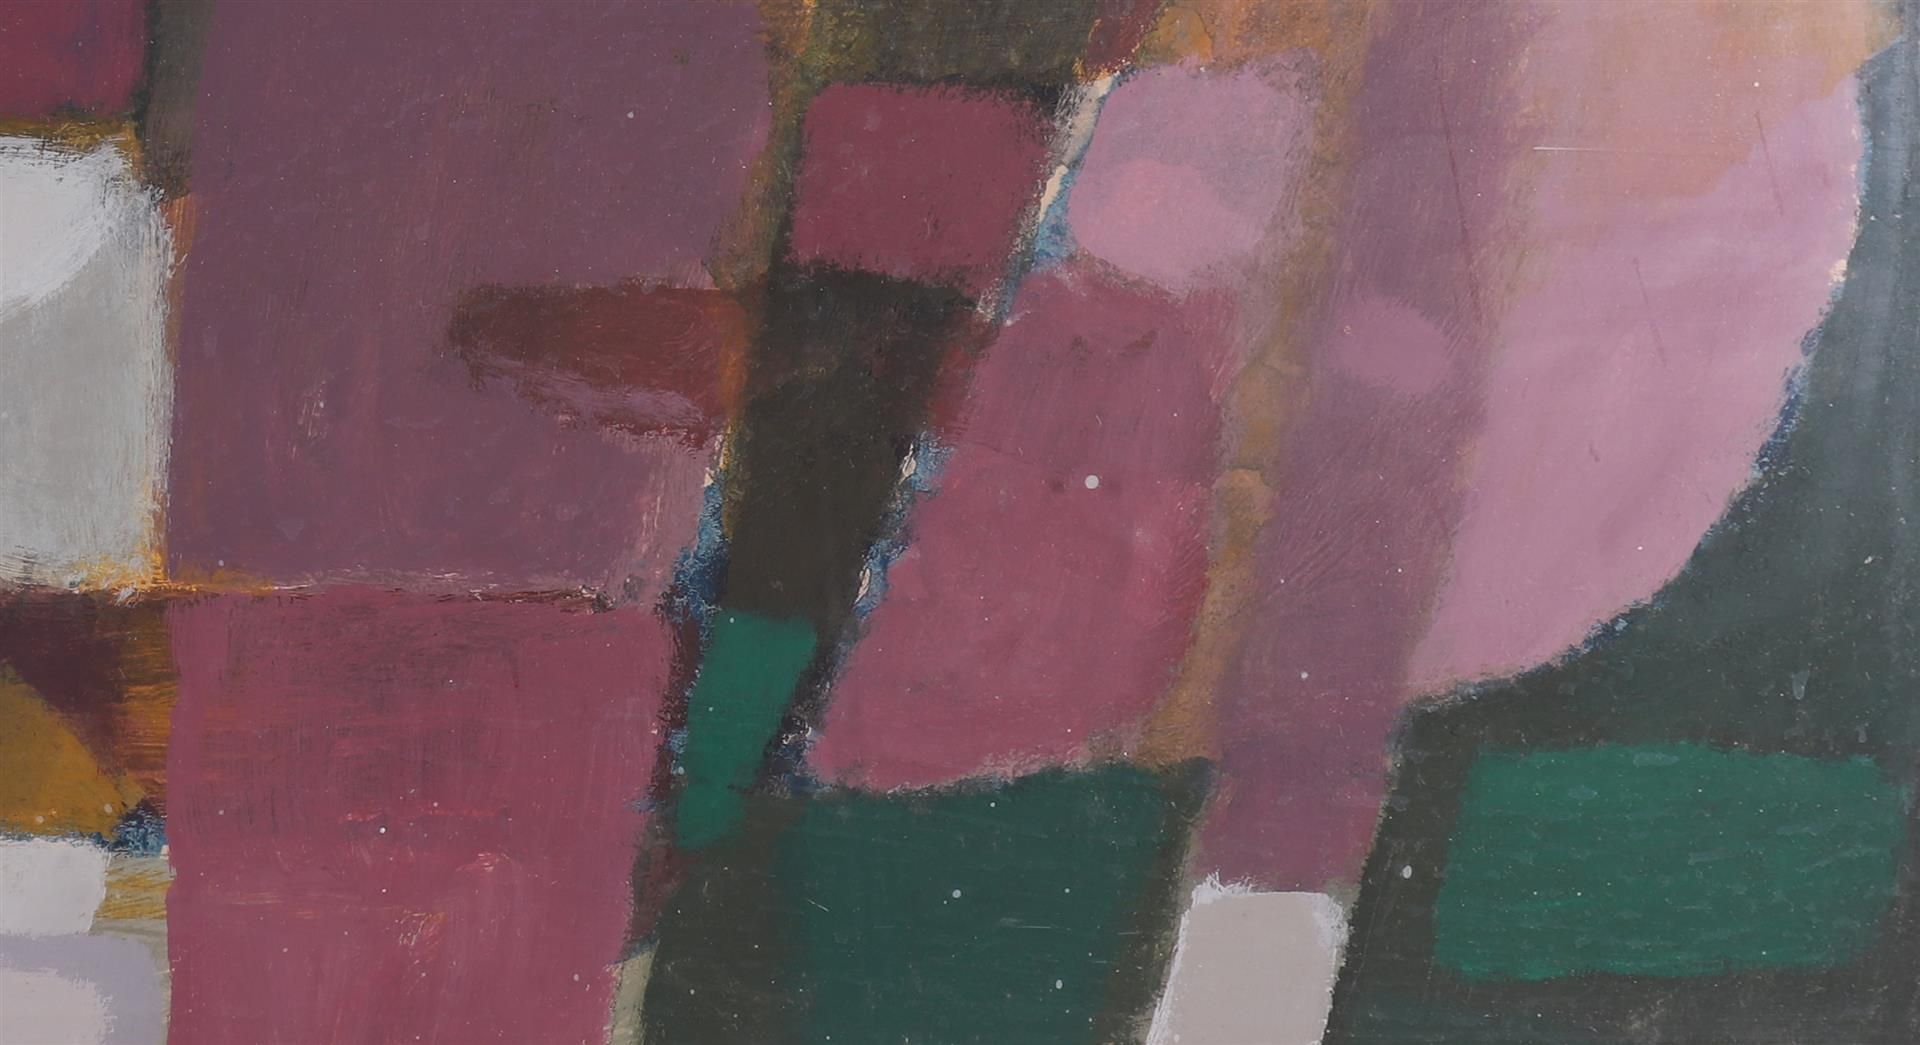 Dijk, van Jo (1931-1999) “Composition”, 1974. - Image 5 of 6